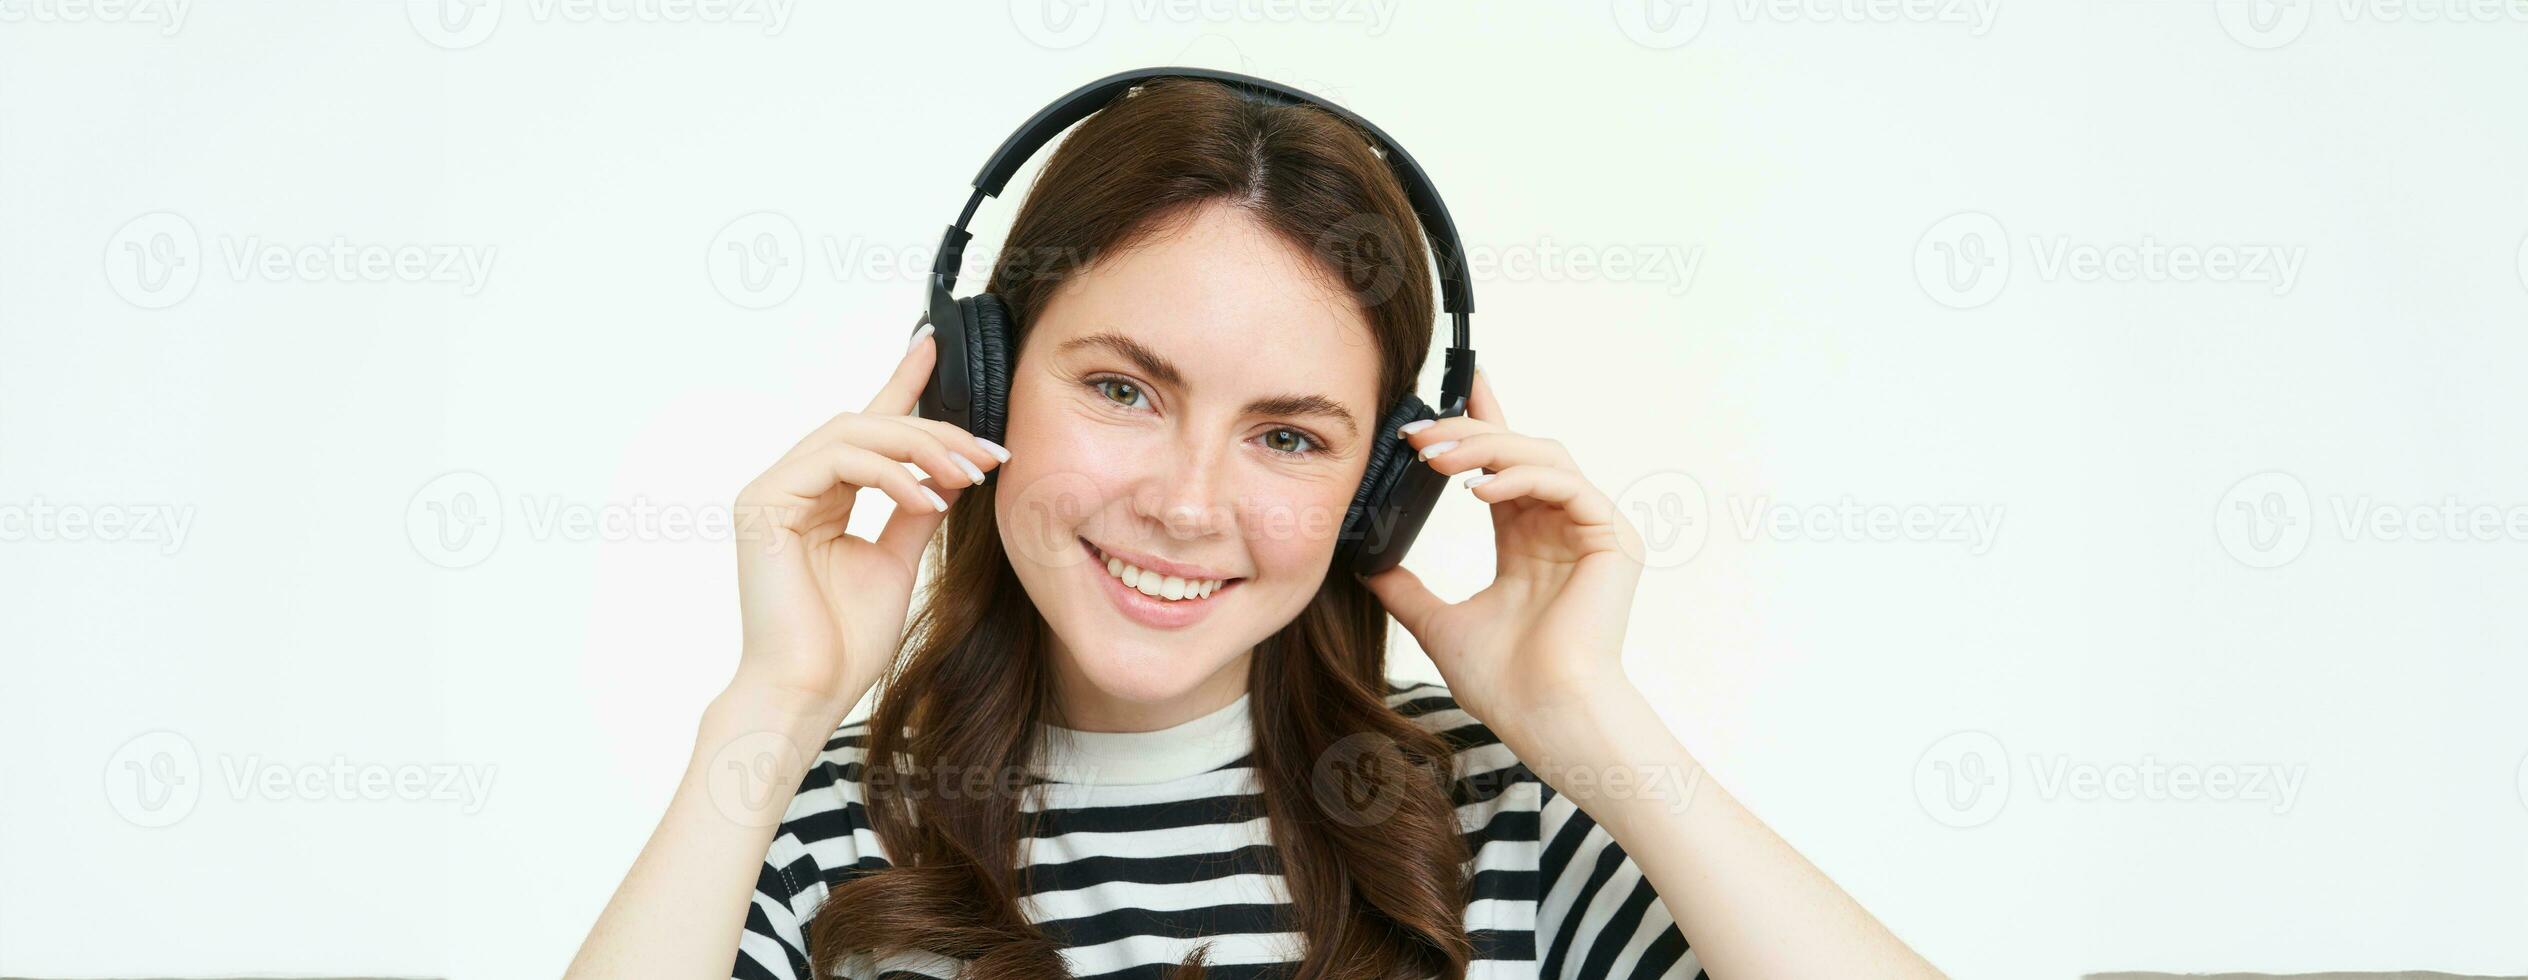 stänga upp porträtt av söt ung kvinna, leende, sätta på hörlurar, lyssnande till musik i hörlurar, påfrestande på ny headset, vit bakgrund foto